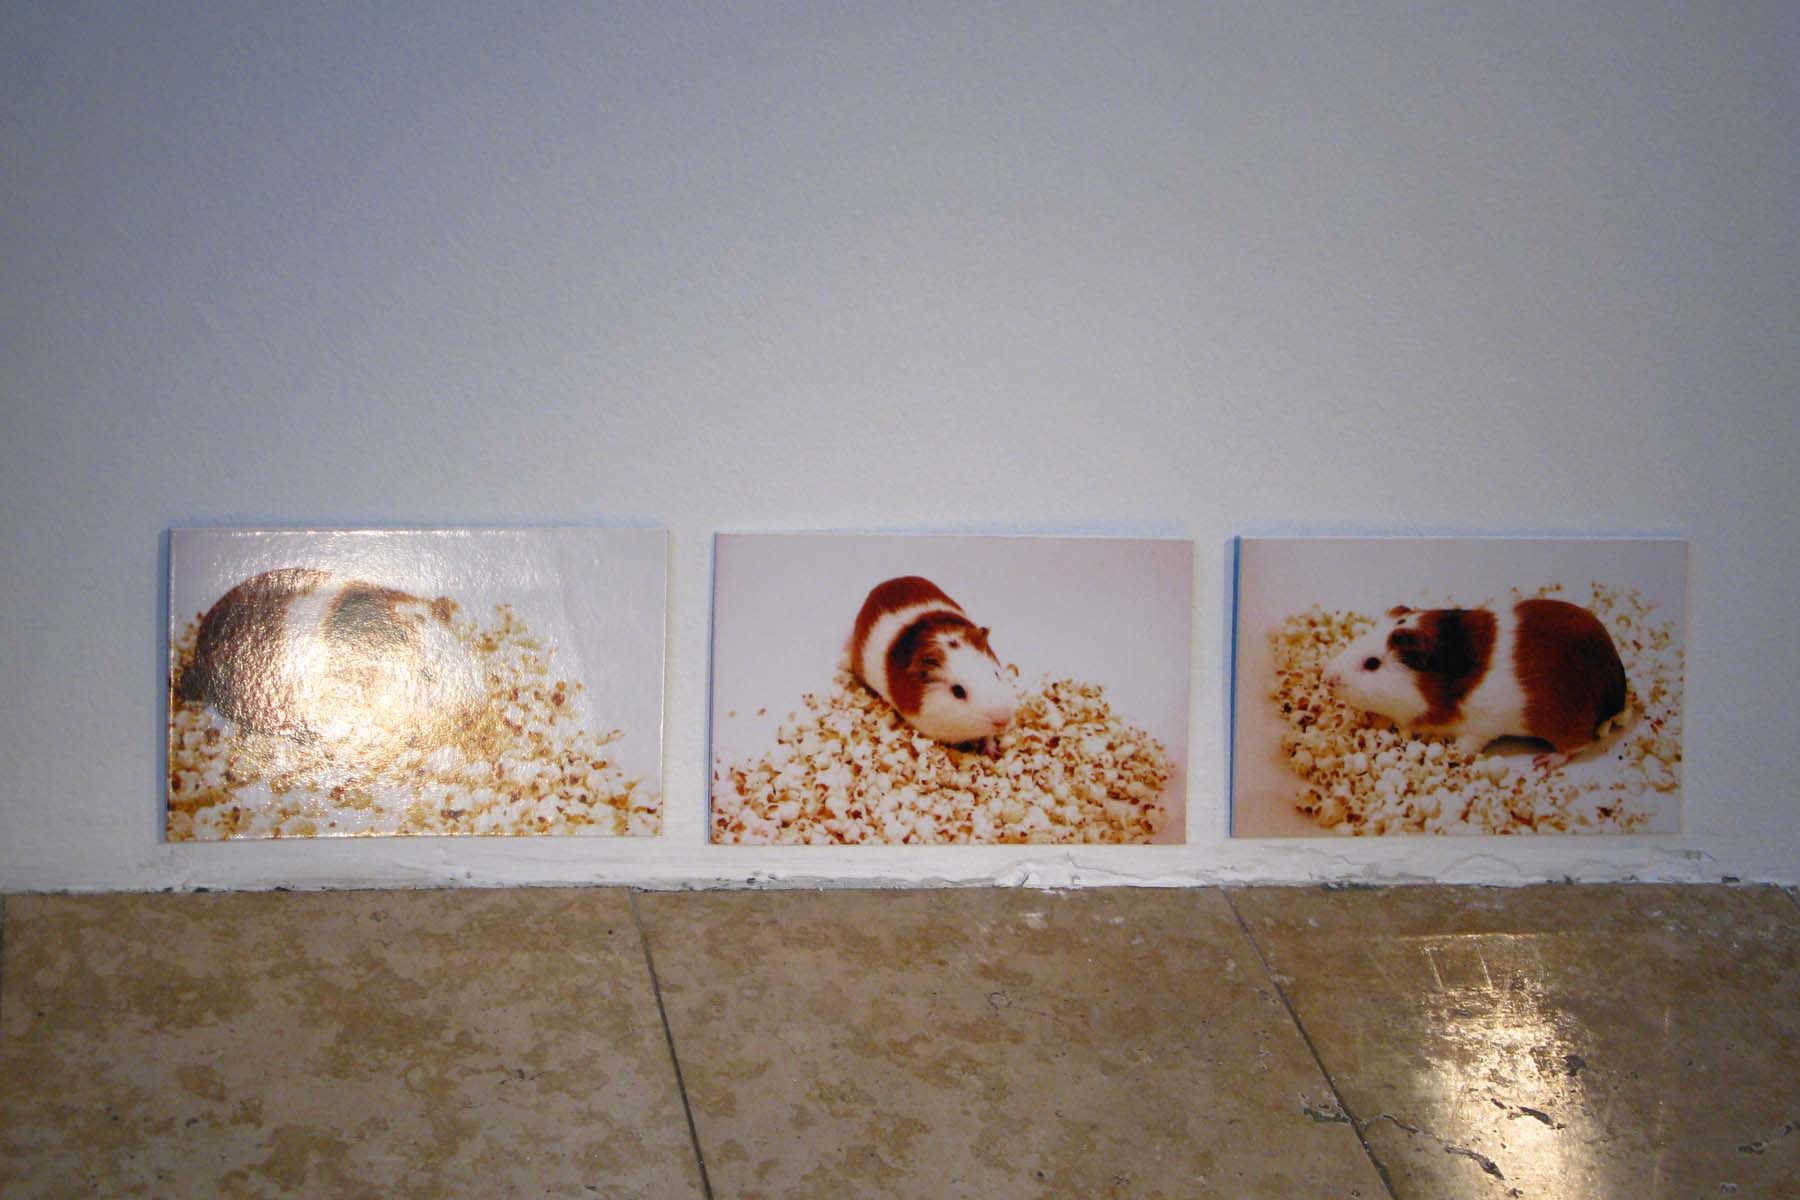 Massimo Premuda, Animal Architecture, 2011, installation view